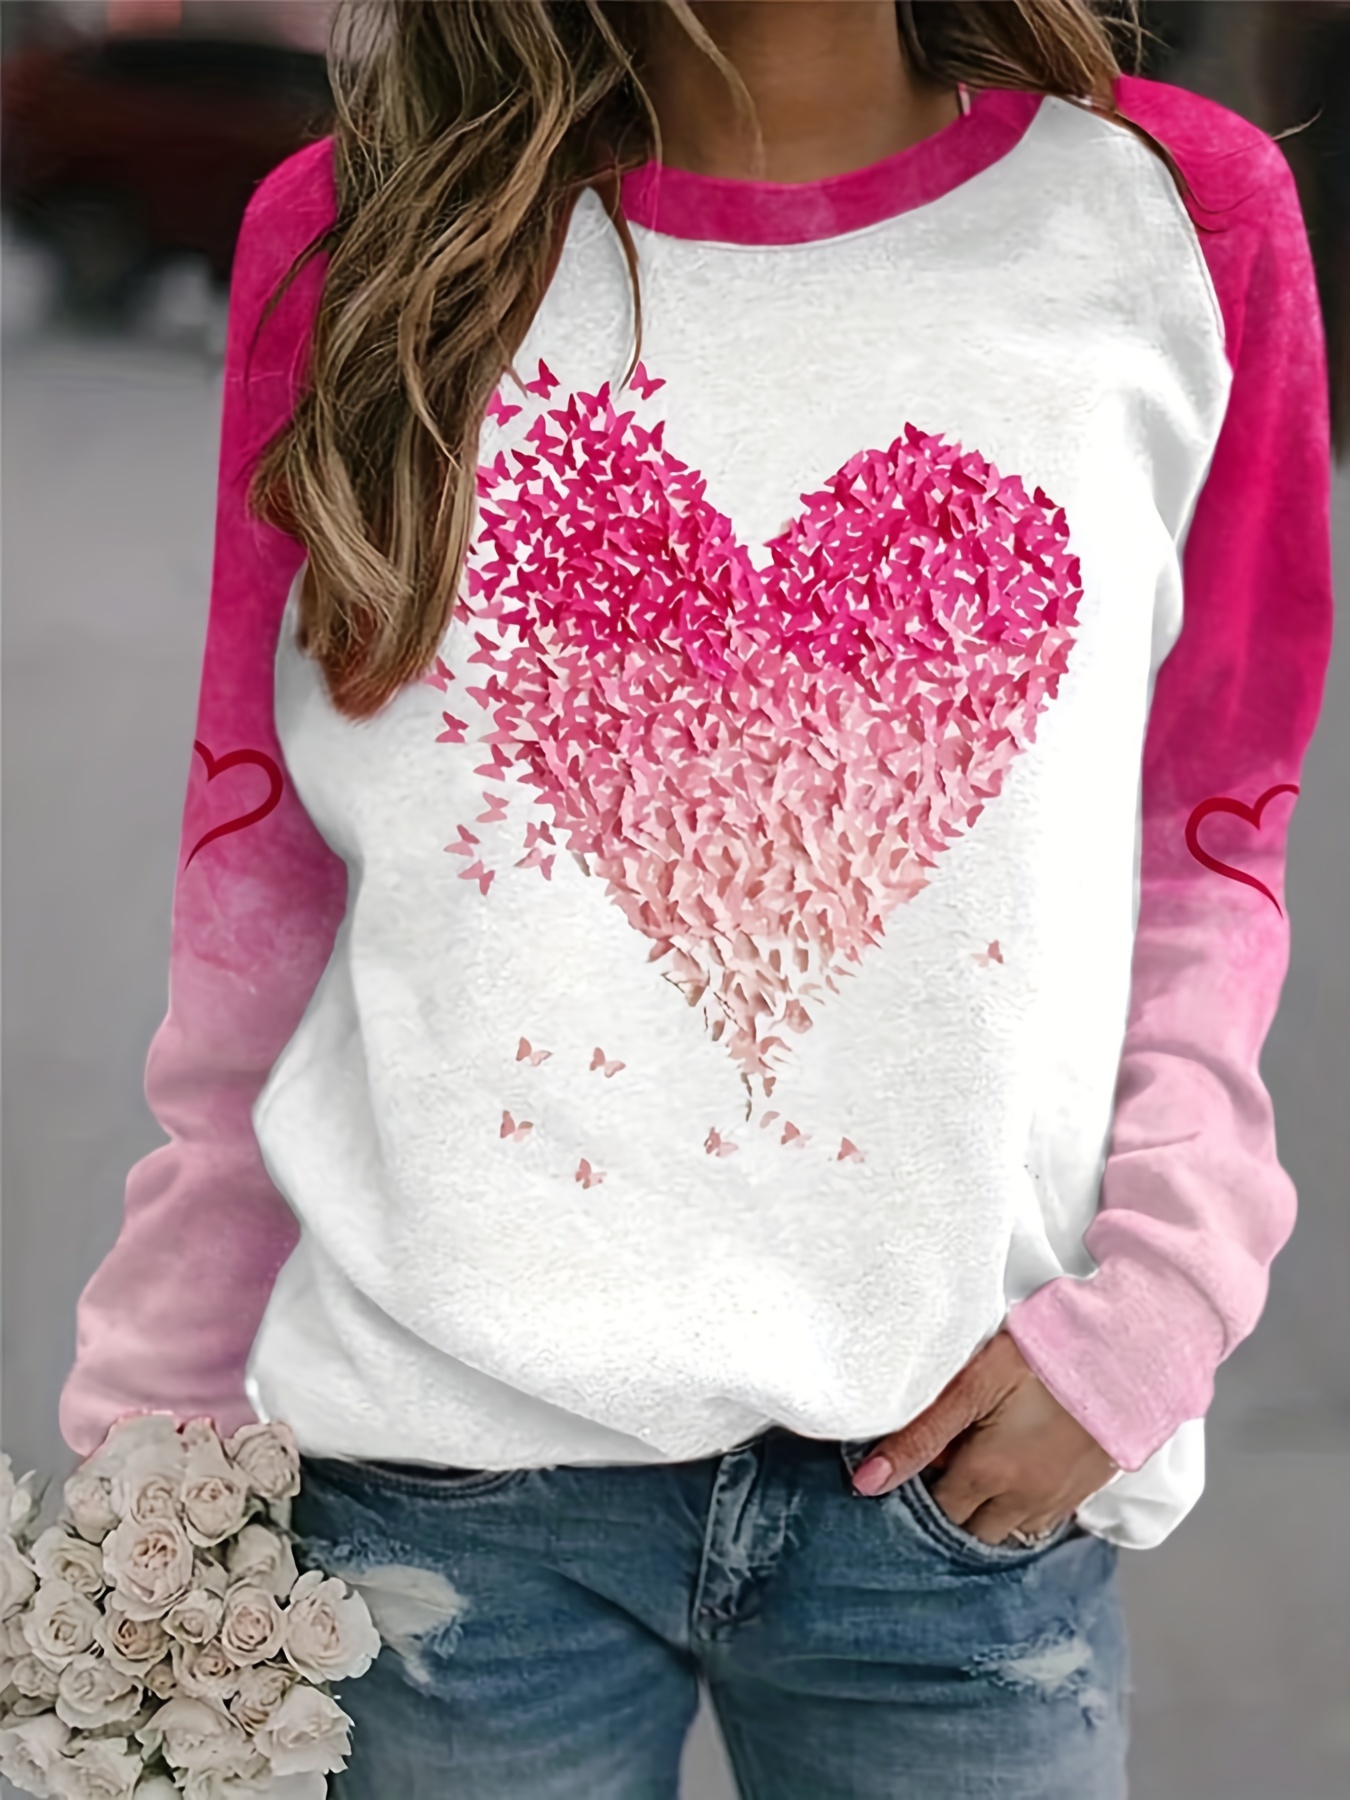 JWZUY Blusas De Mujer Crewneck Sweatshirt Women Heart Print